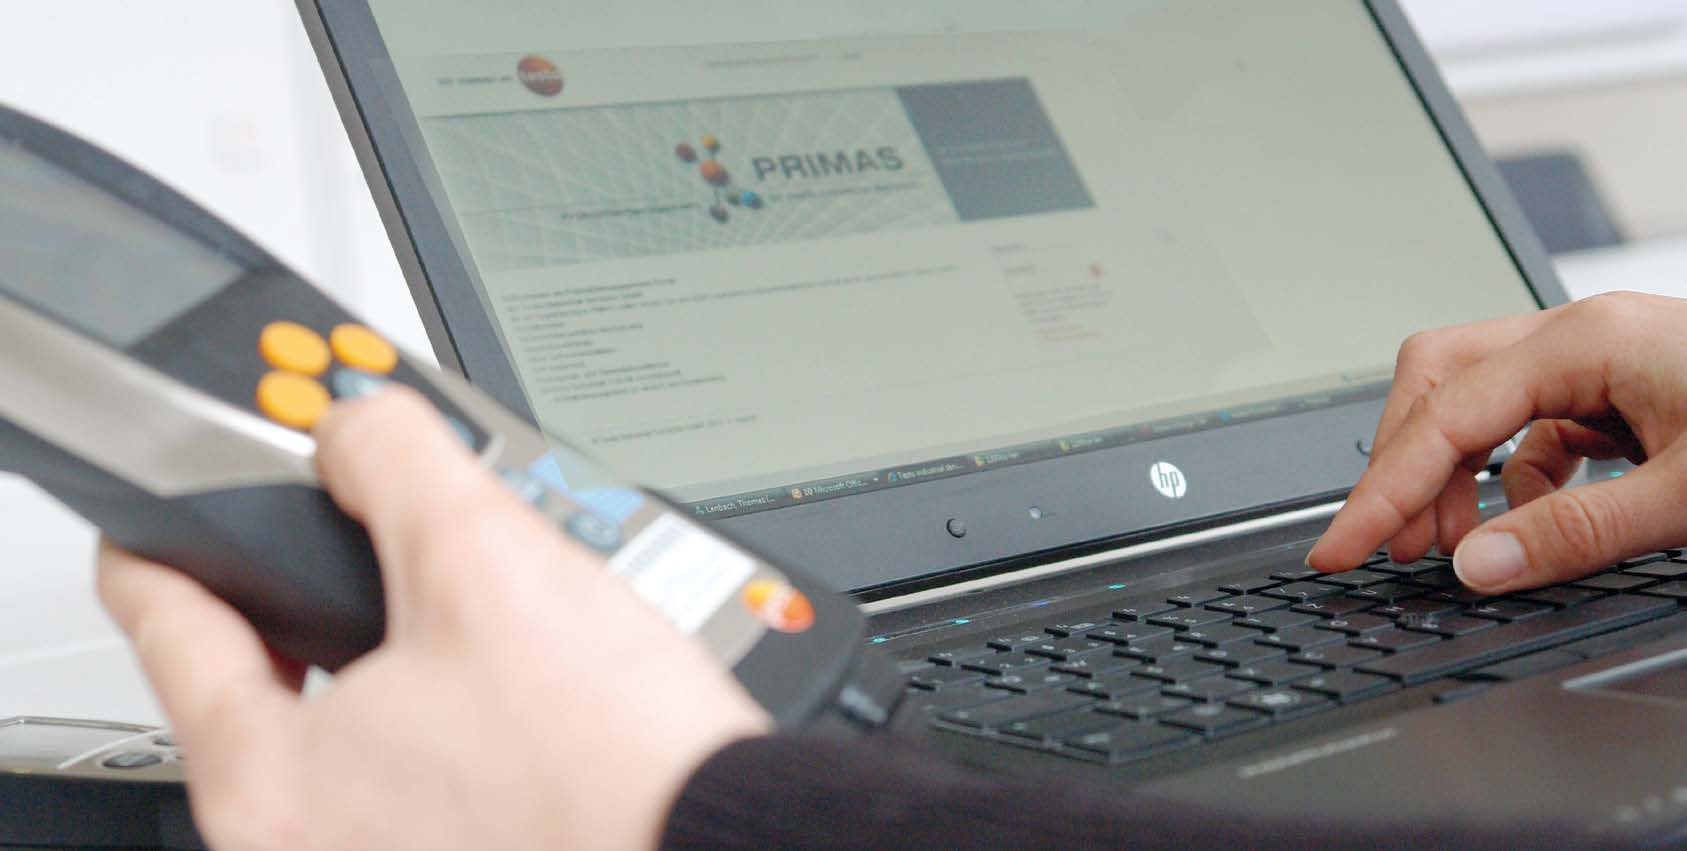 PRIMAS online PRIMAS online - Internetbasiertes Prfmittelmanagement PRIMAS online ermöglicht Ihnen den Zugriff auf Ihre Prfmitteldaten via Internet standort- und zeitunabhängig ohne zusätzliche